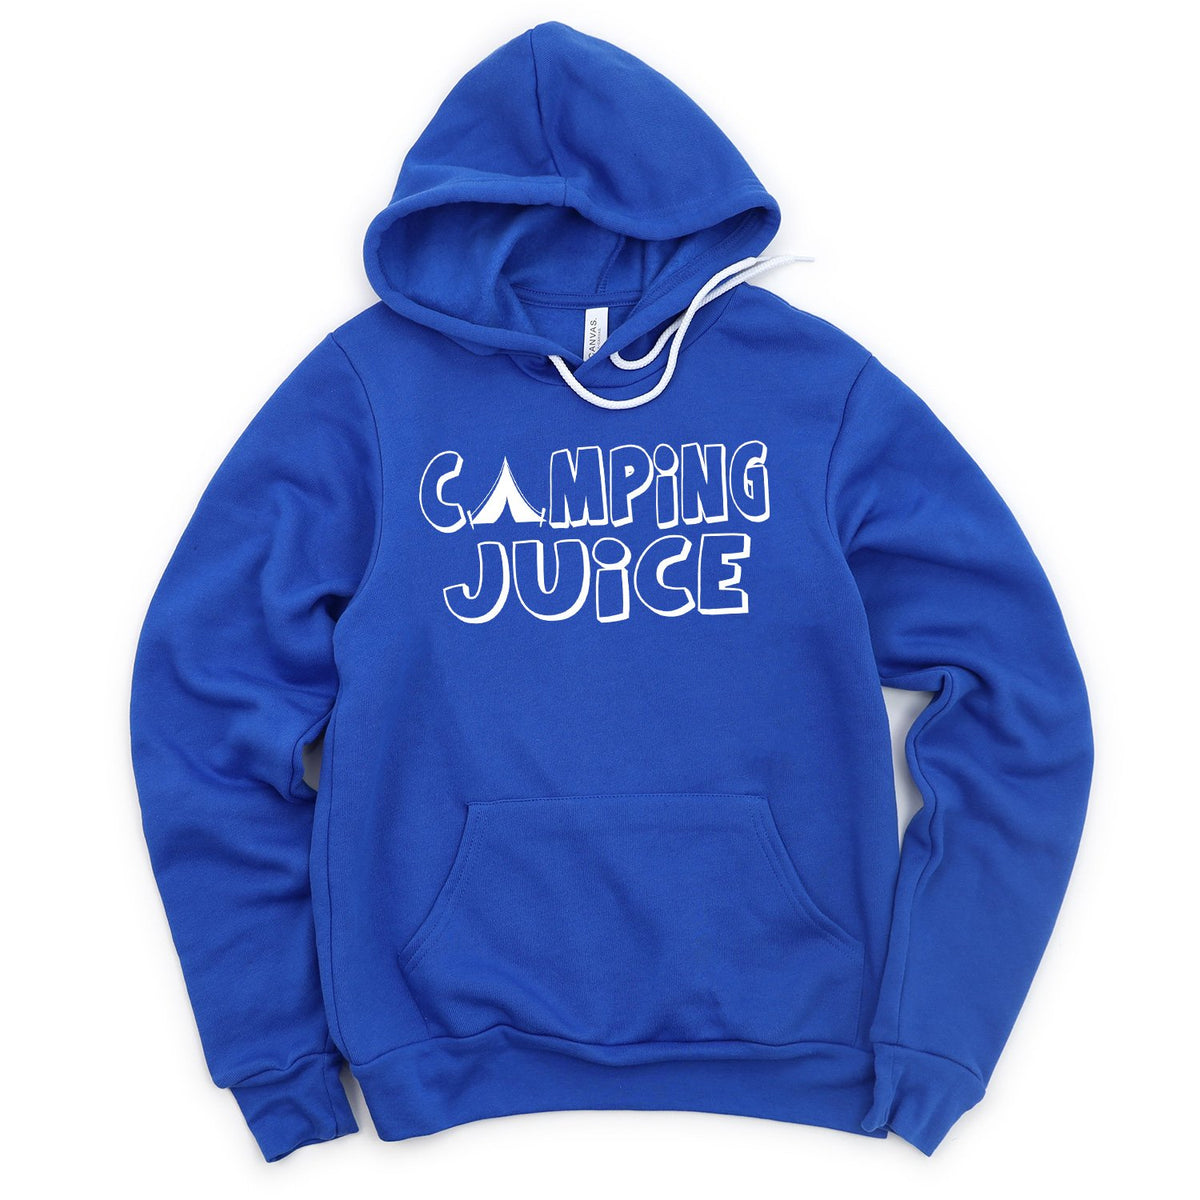 Camping Juice - Hoodie Sweatshirt